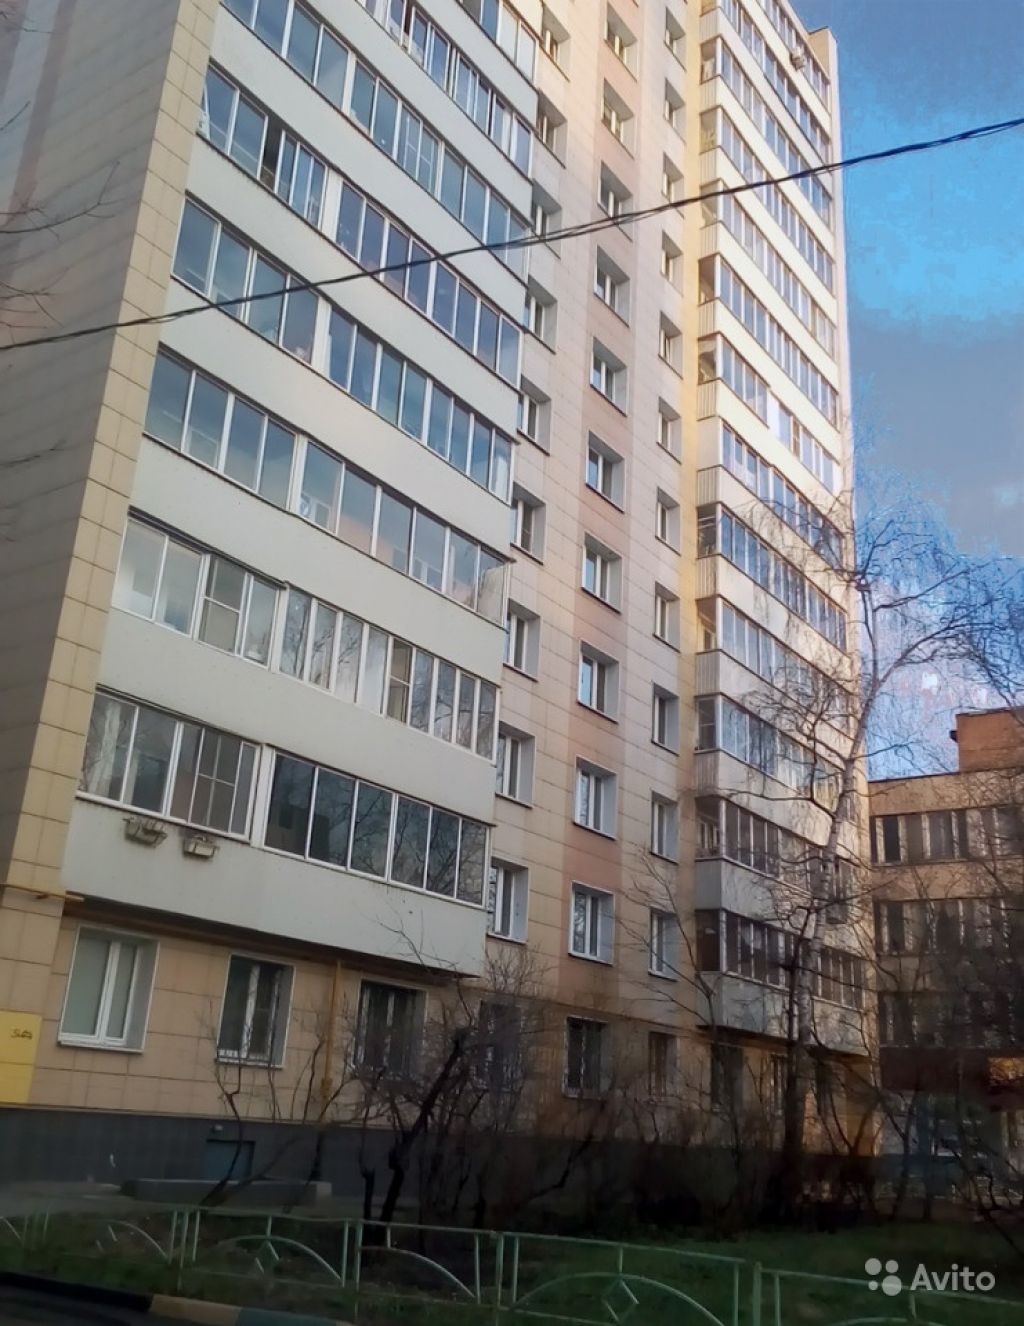 Продам квартиру Студия 12.5 м² на 1 этаже 12-этажного панельного дома в Москве. Фото 1